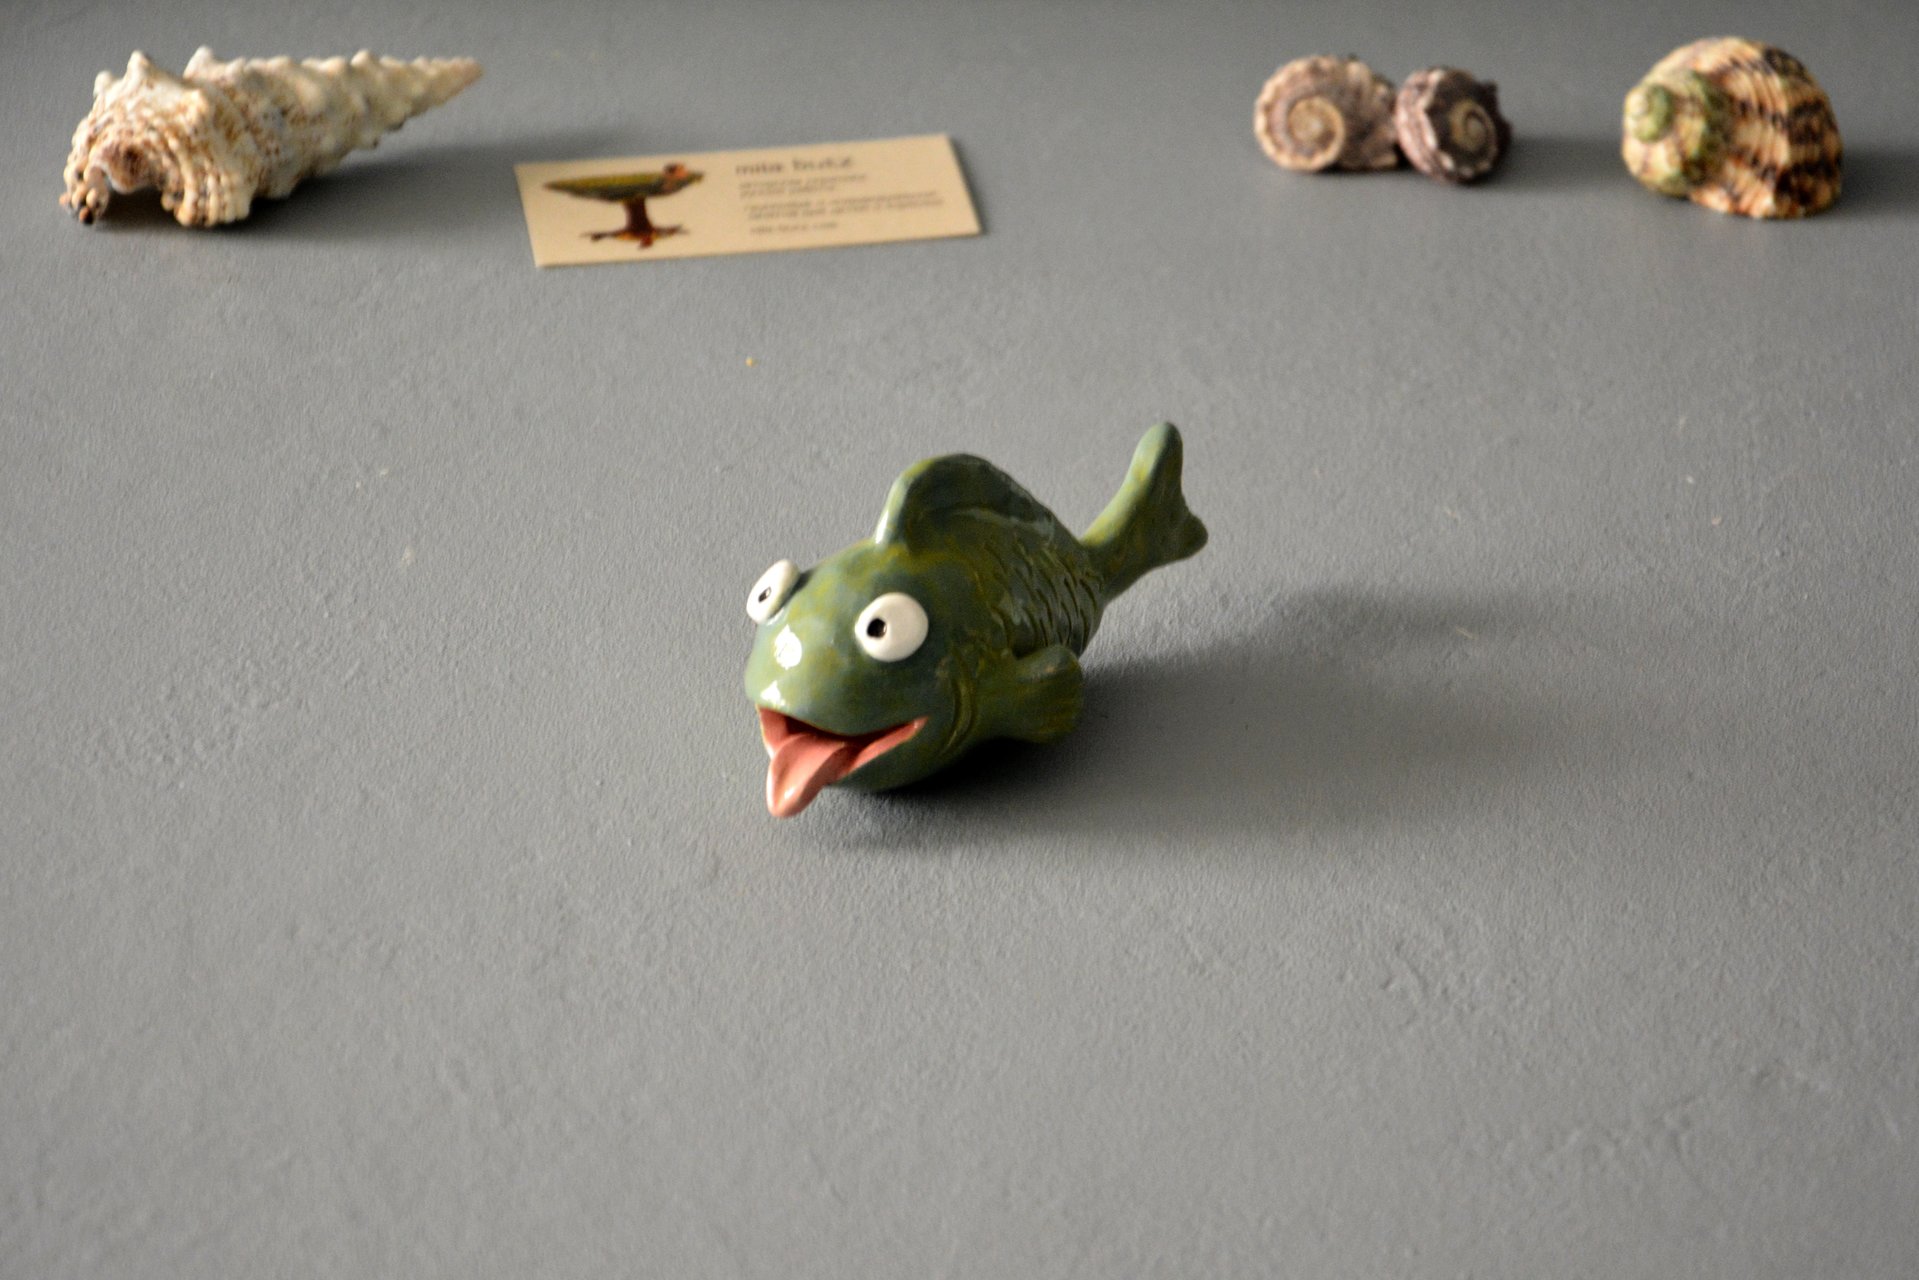 Керамическая фигурка рыбки улыбаки, длина - 12.5 см, высота - 6 см, фото 2 из 6.